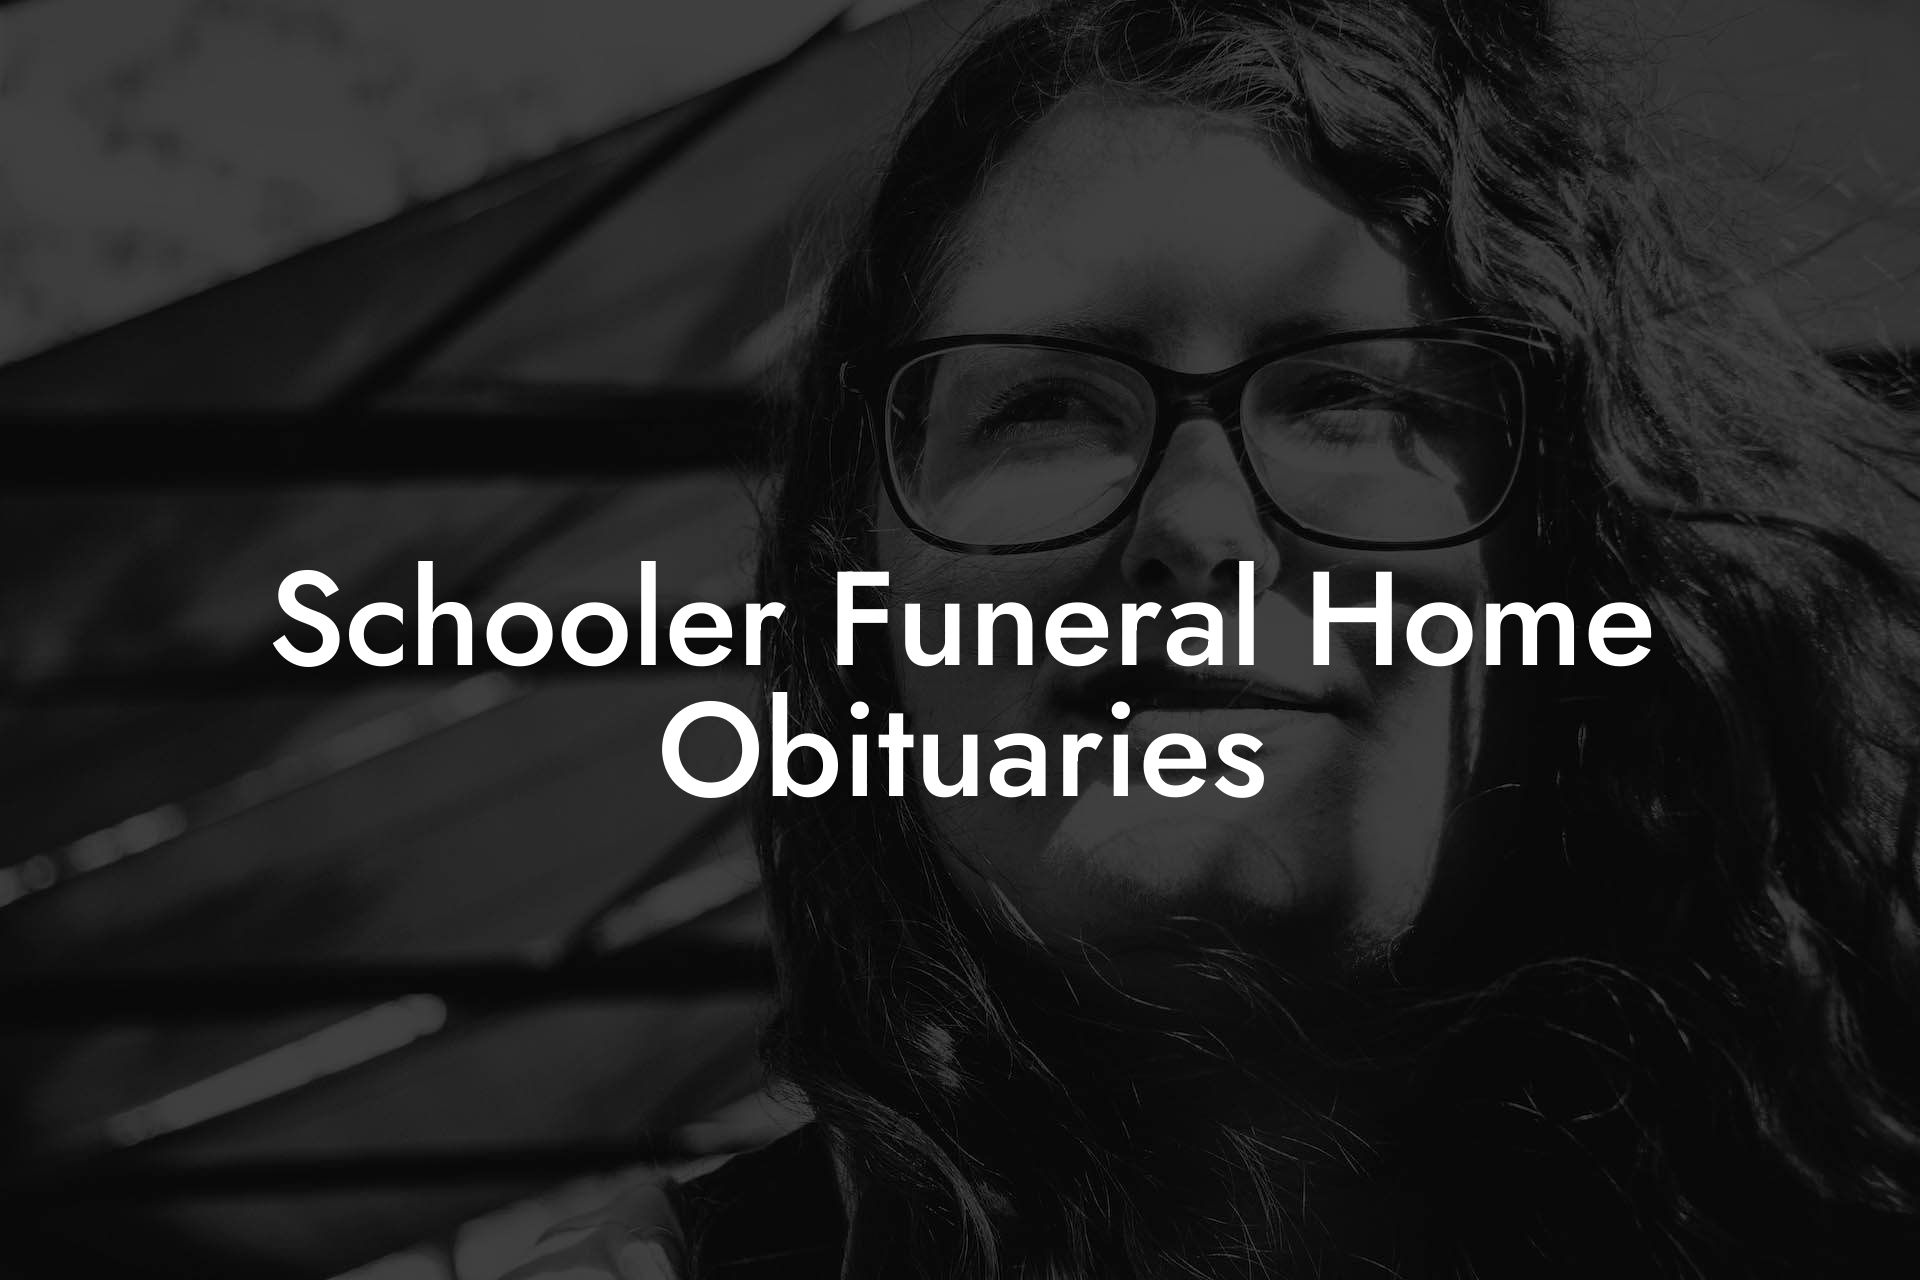 Schooler Funeral Home Obituaries